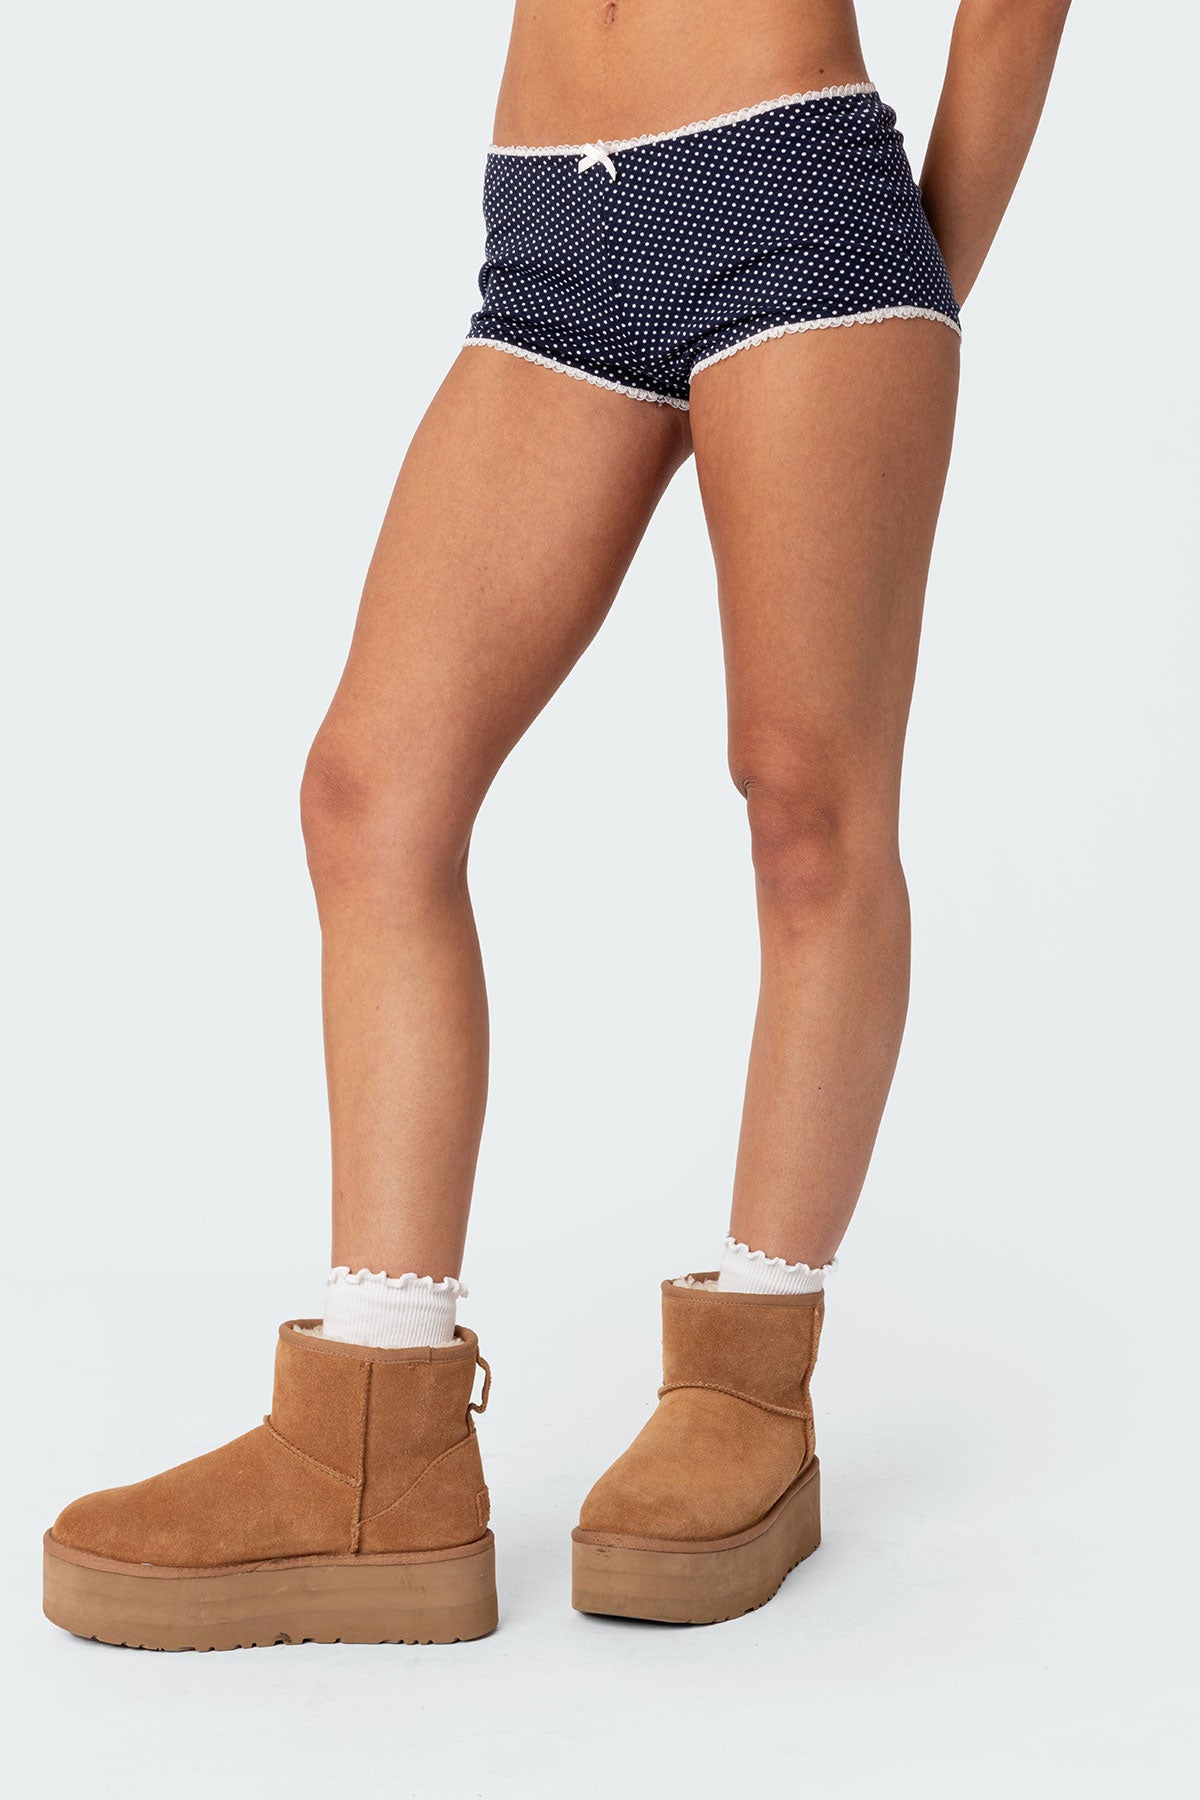 Kendall Micro Shorts